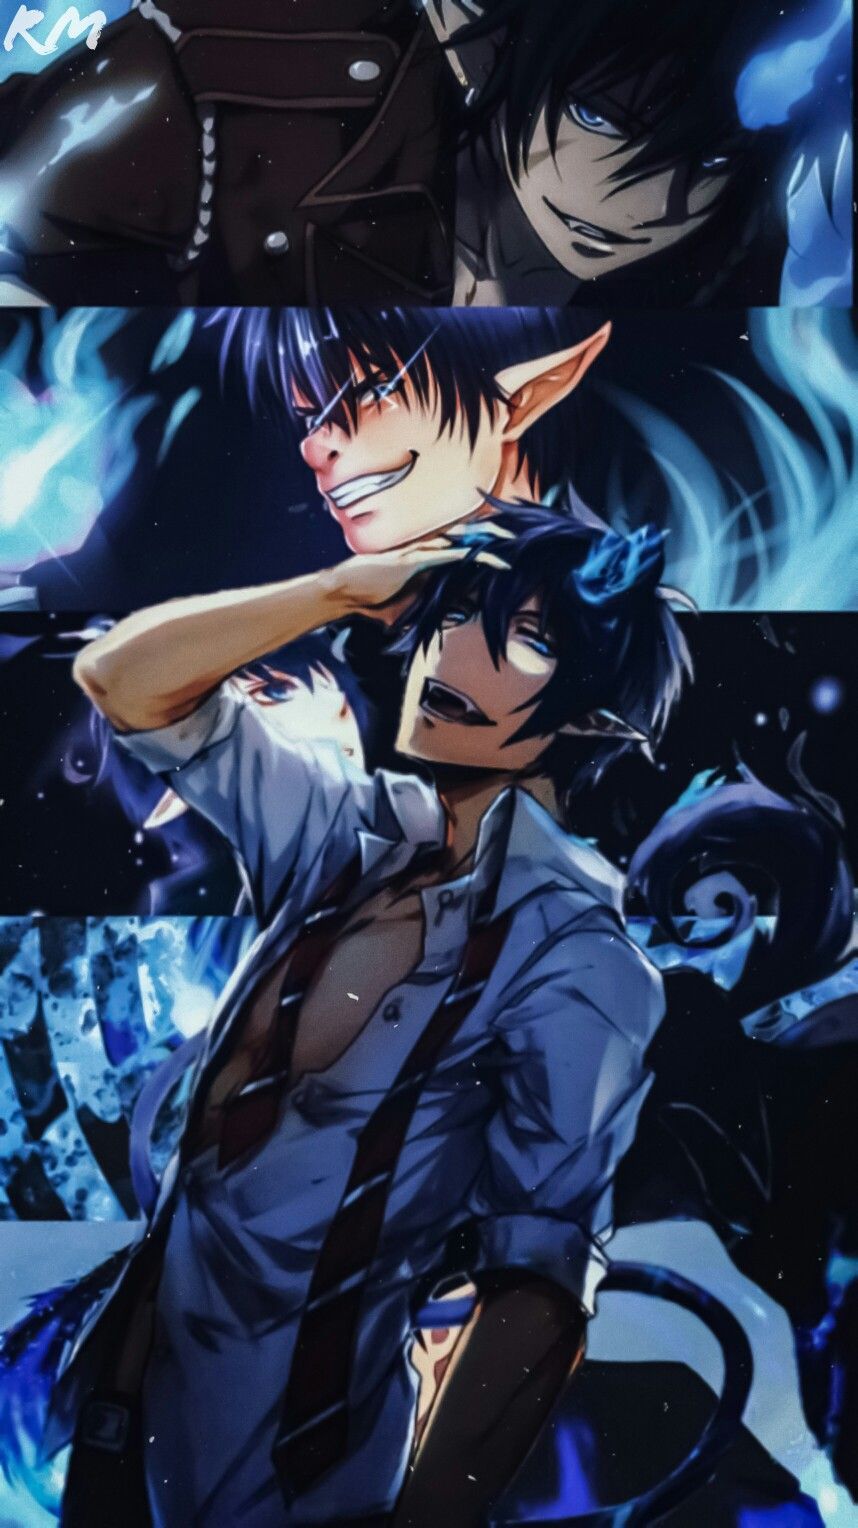 ▫ Fondos. Anime wallpaper, Blue exorcist aesthetic, Anime lockscreen wallpaper